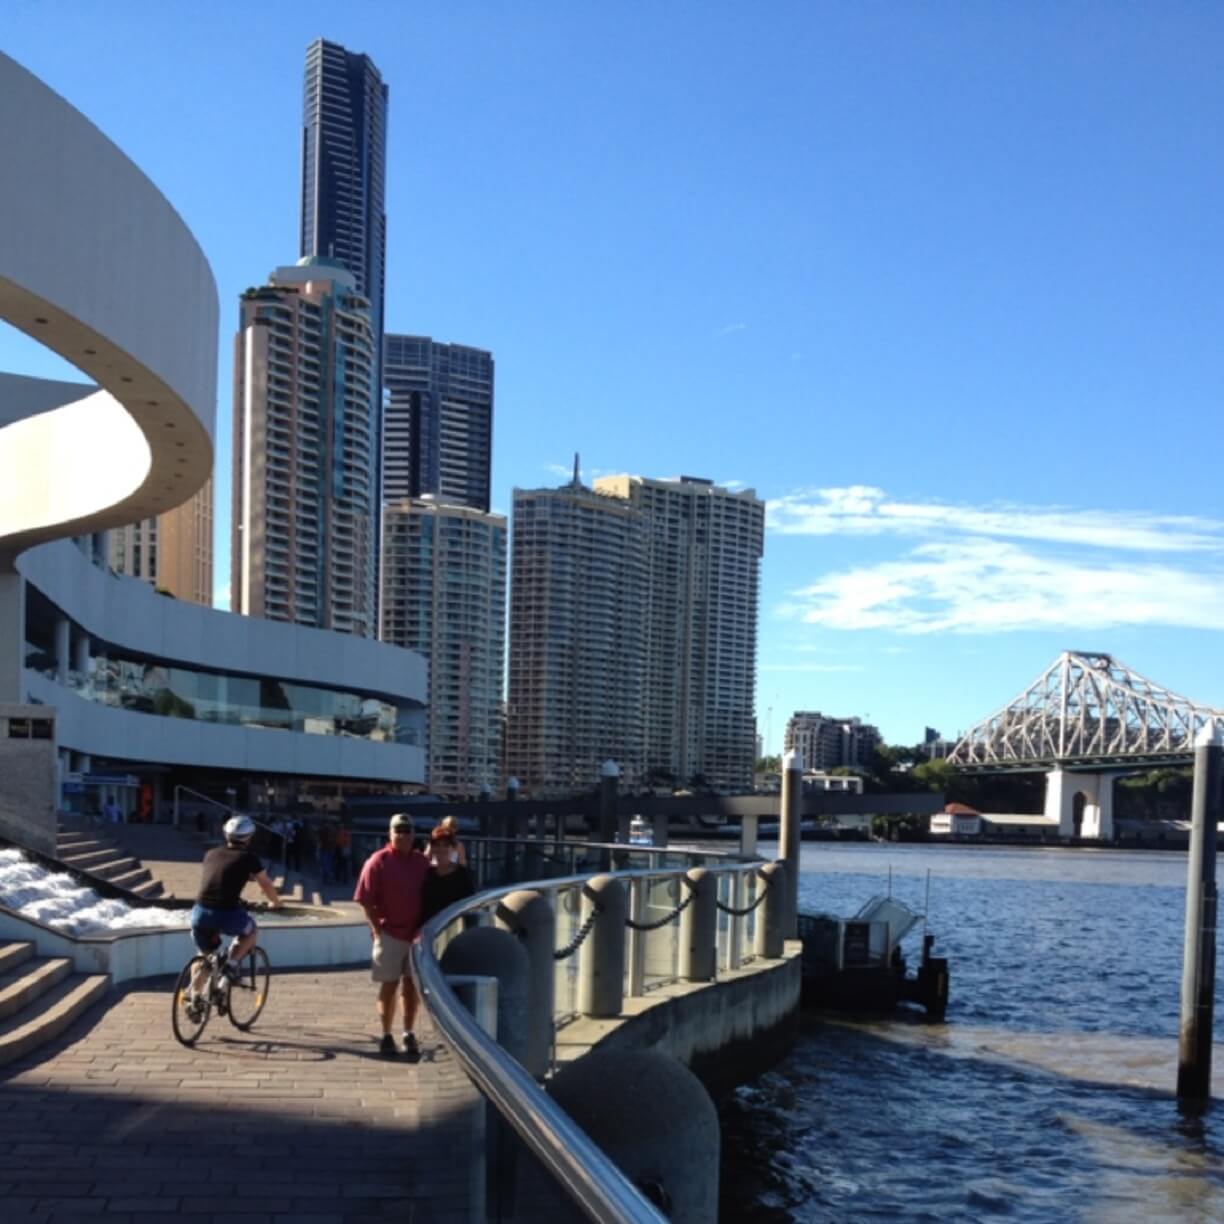 23 Tempat Wisata Terbaik di Brisbane Australia 2020